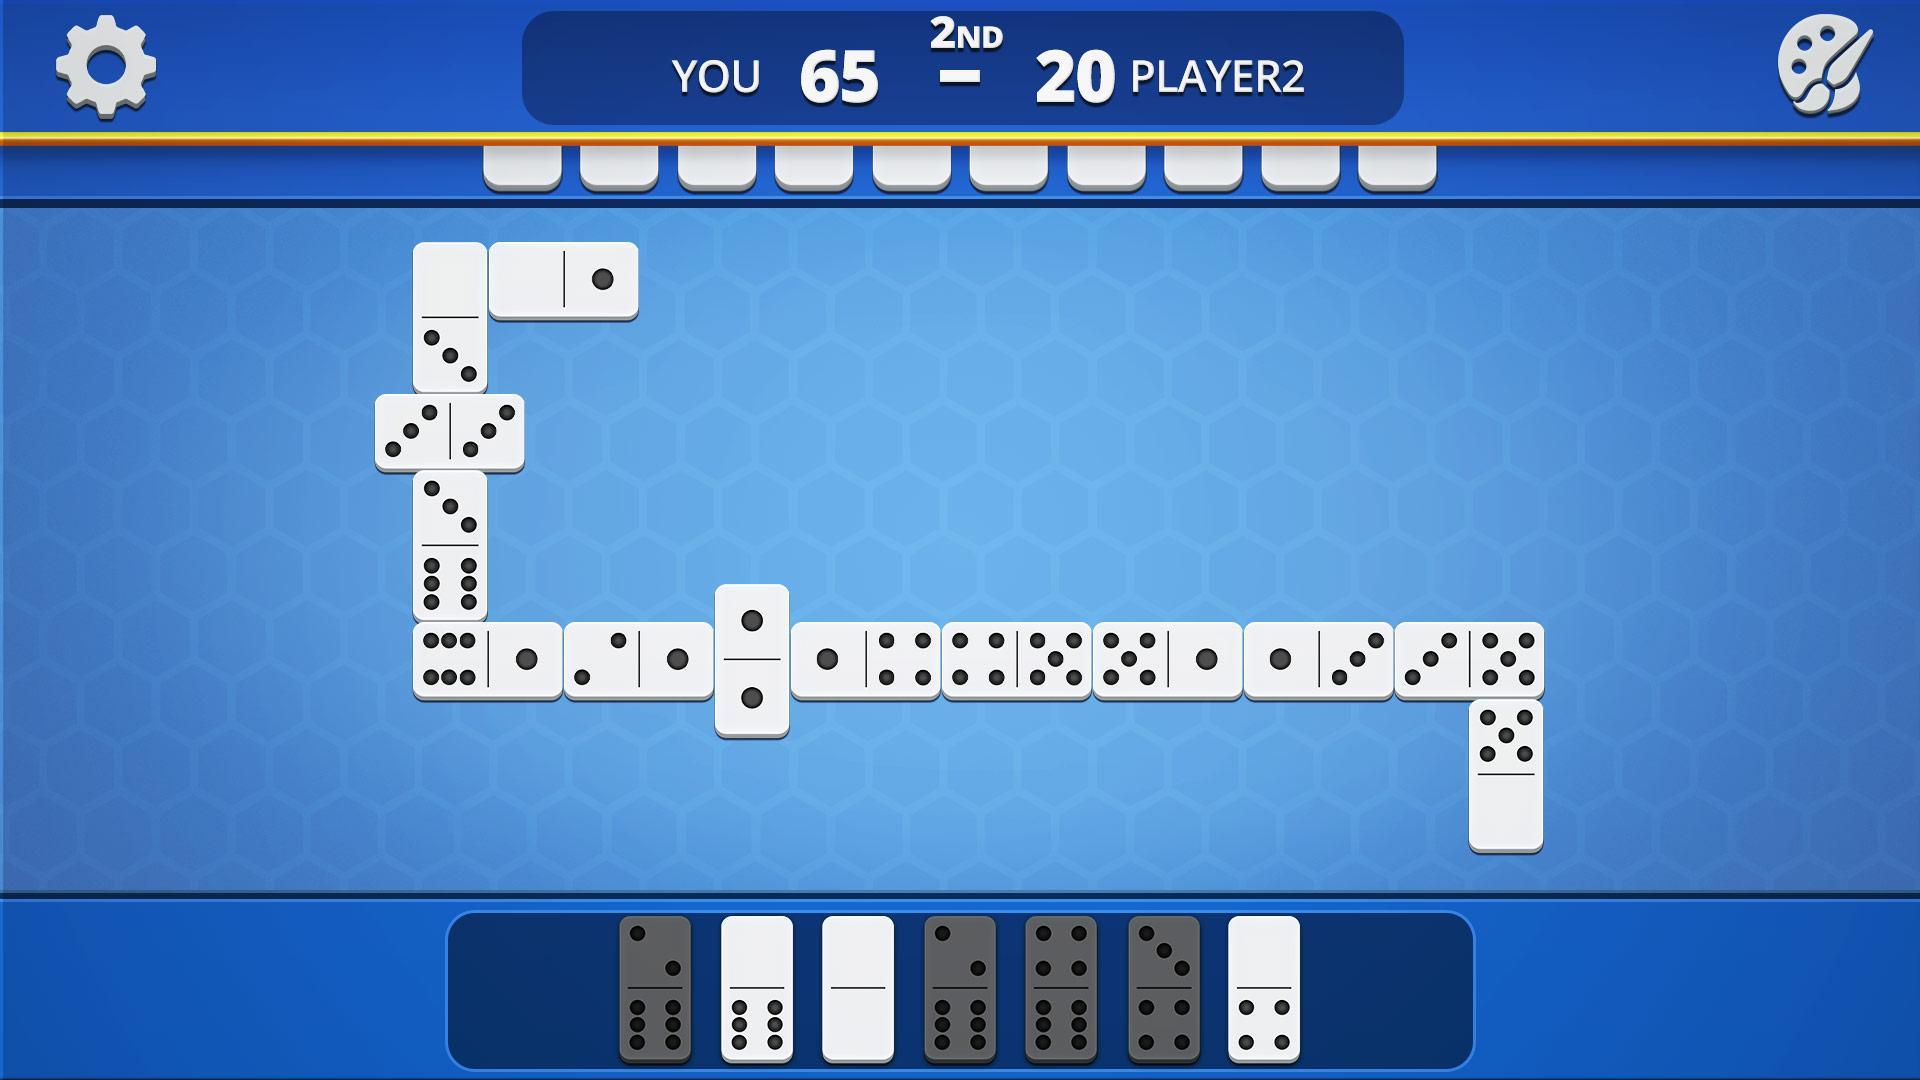 Dominoes Classic Domino Tile Based Game 1.2.5 Screenshot 15